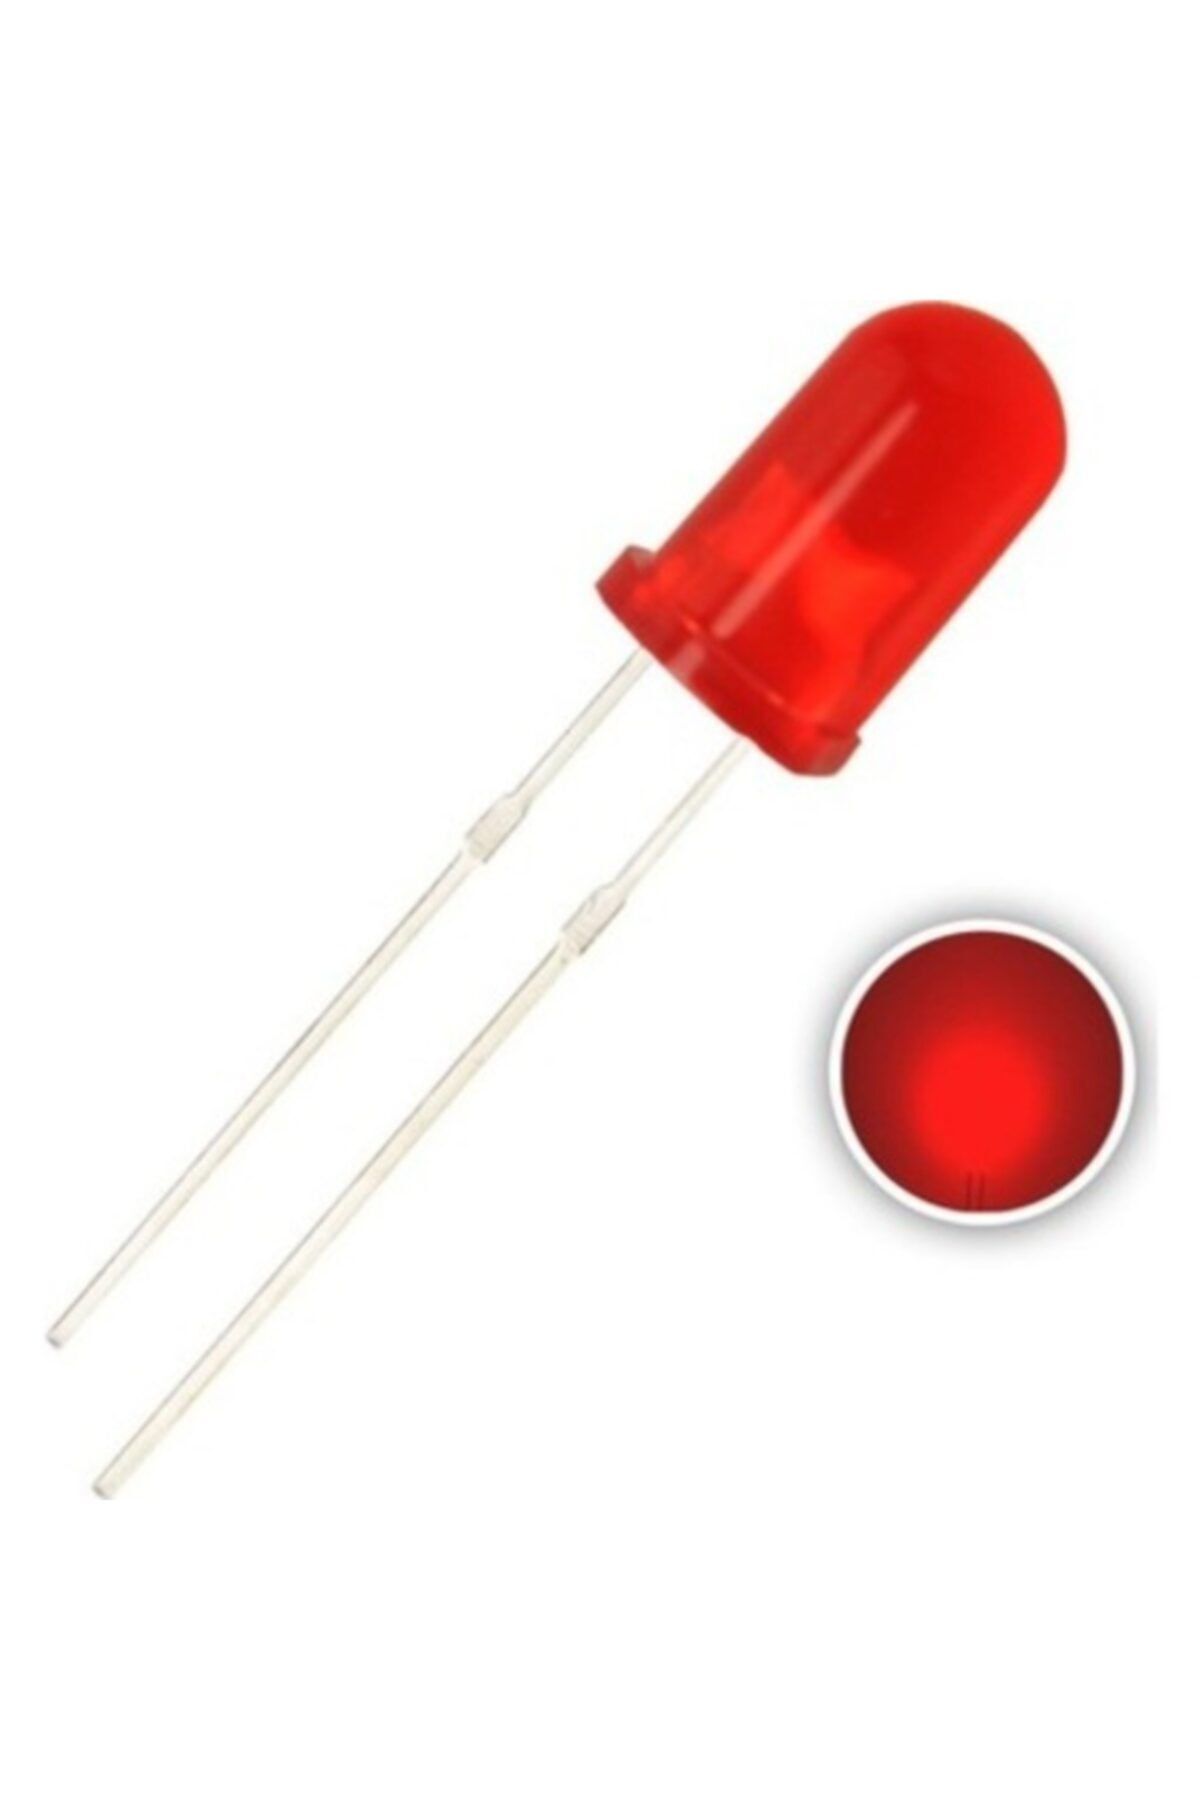 Emay 10 Adet - 5mm Diffused Led - Kırmızı (red) - Arduino, Deney